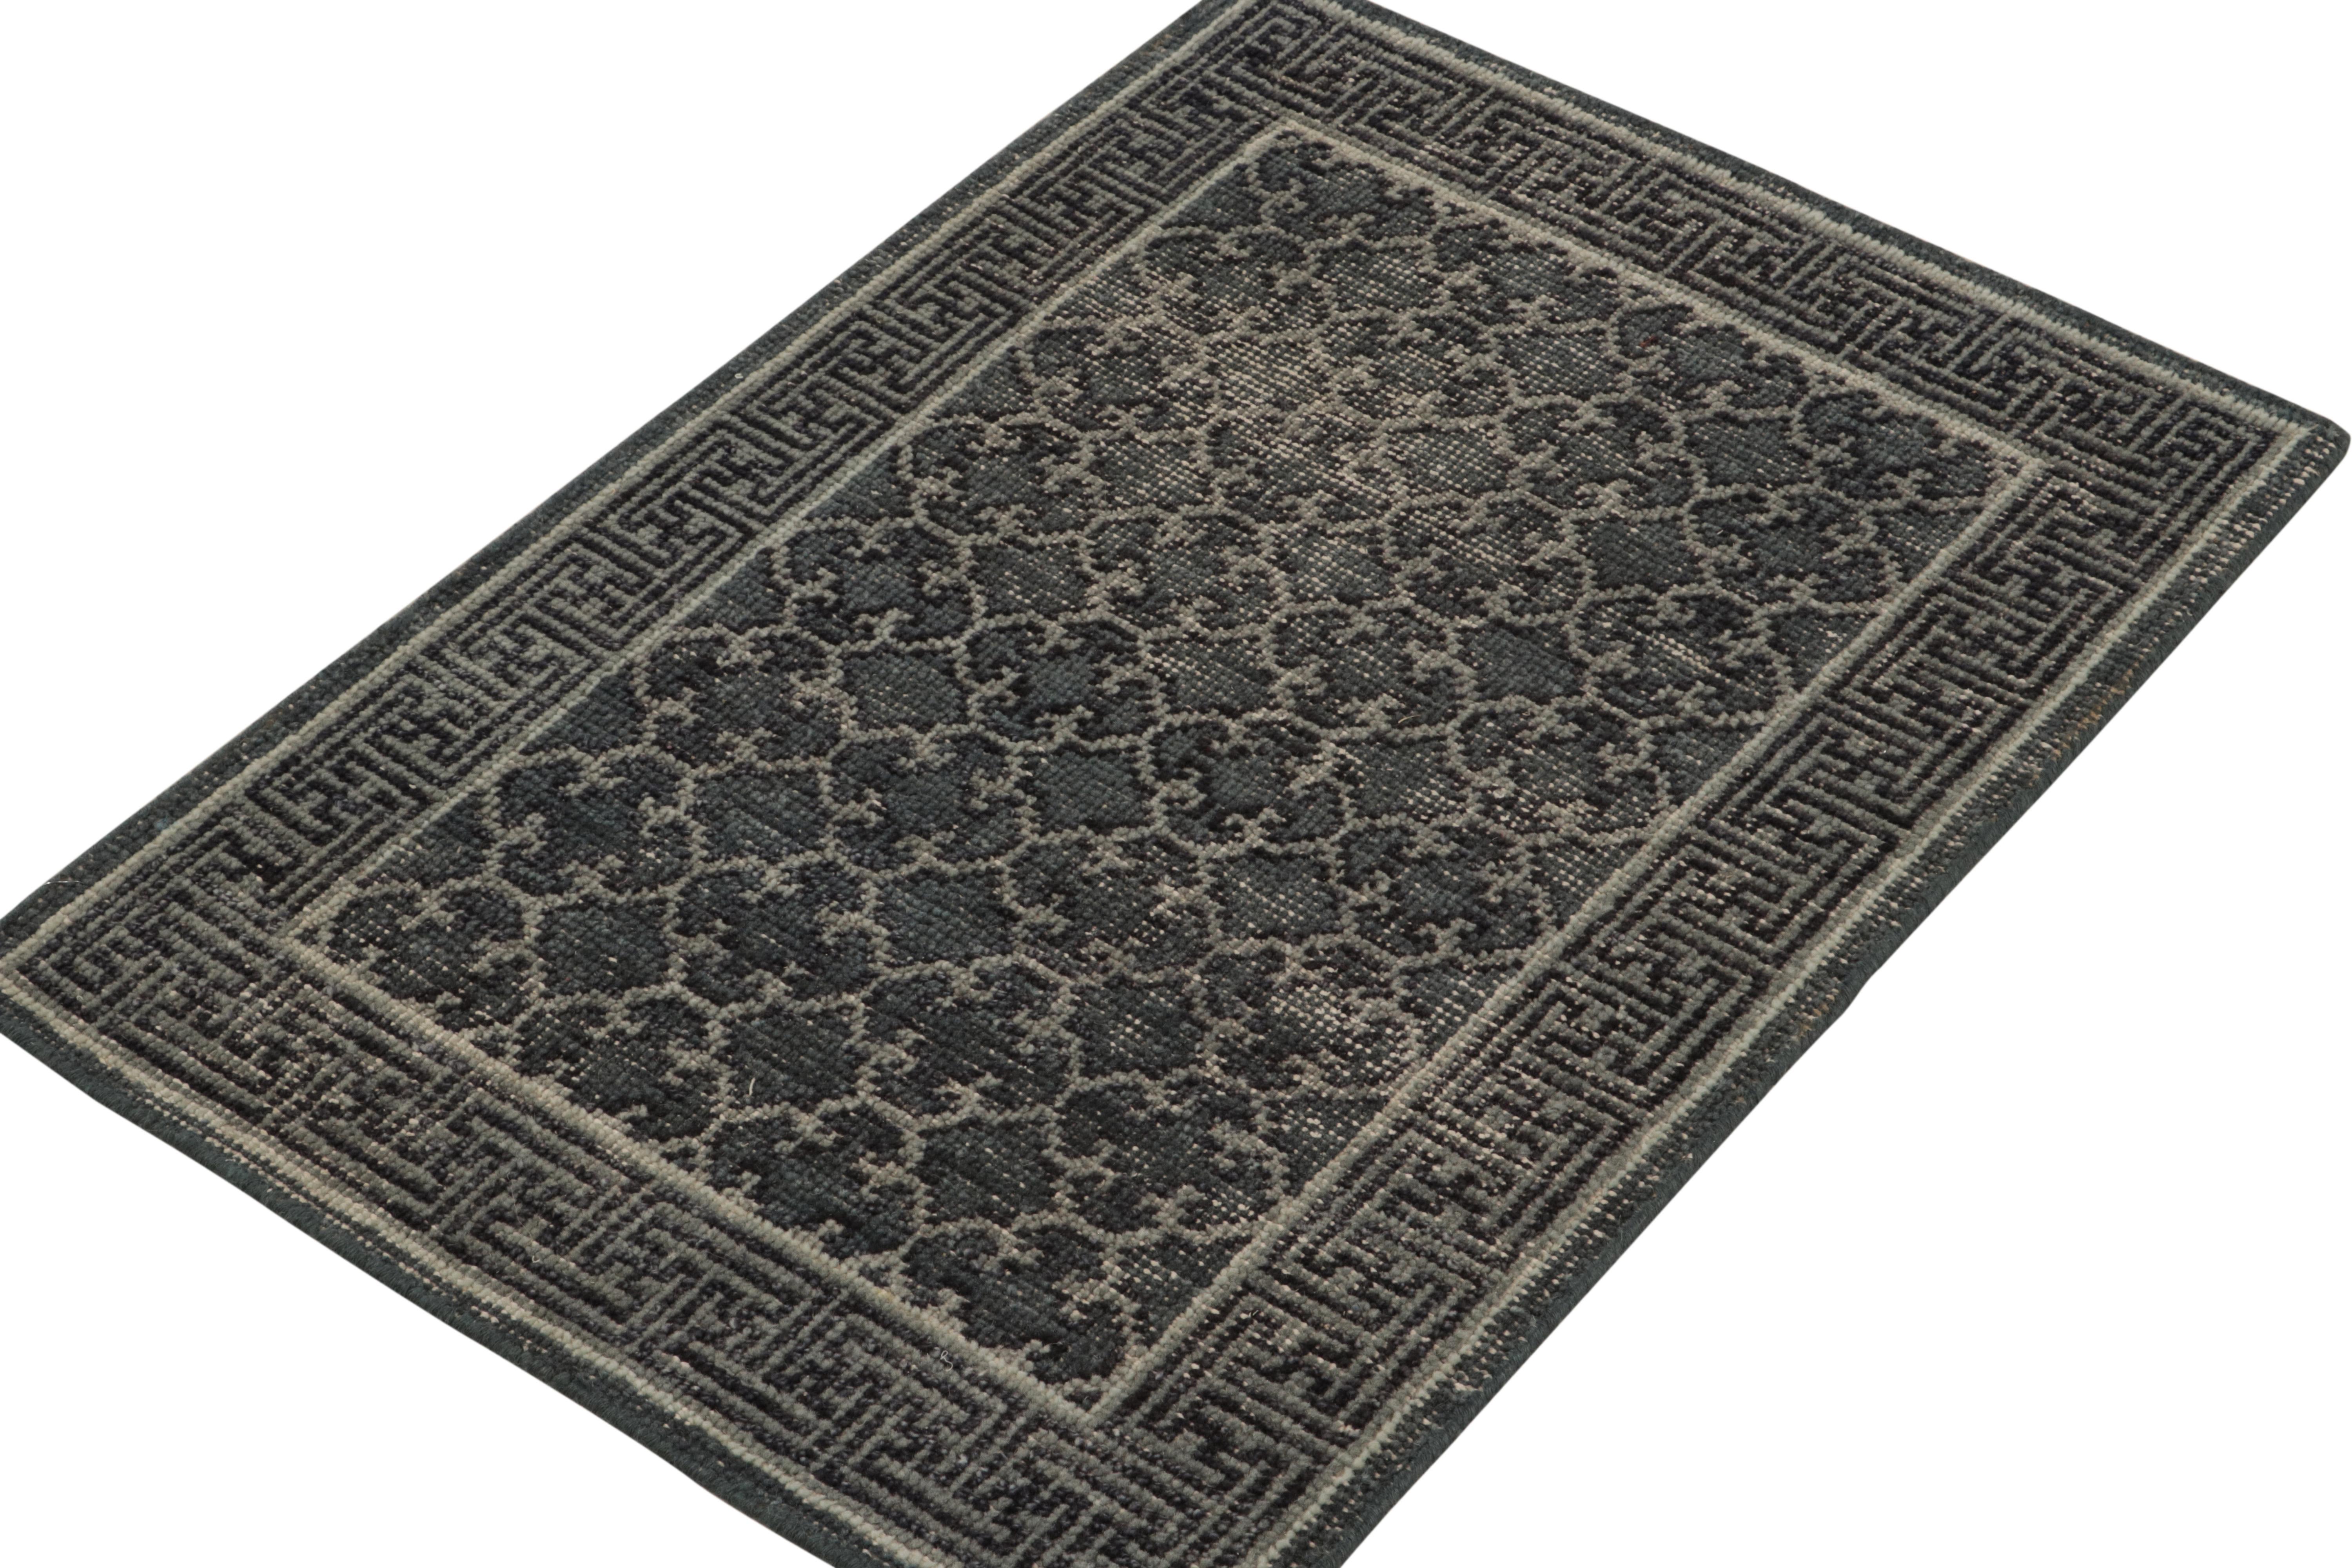 Ein eleganter, handgeknüpfter 2x3-Wollteppich aus der Homage-Kollektion von Rug & Kilim - eine kühne texturale Enzyklopädie berühmter Muster und Stile. 

Dieser klassische Stil ist von antiken Khotan-Samarkand-Teppichen aus dem frühen 20.